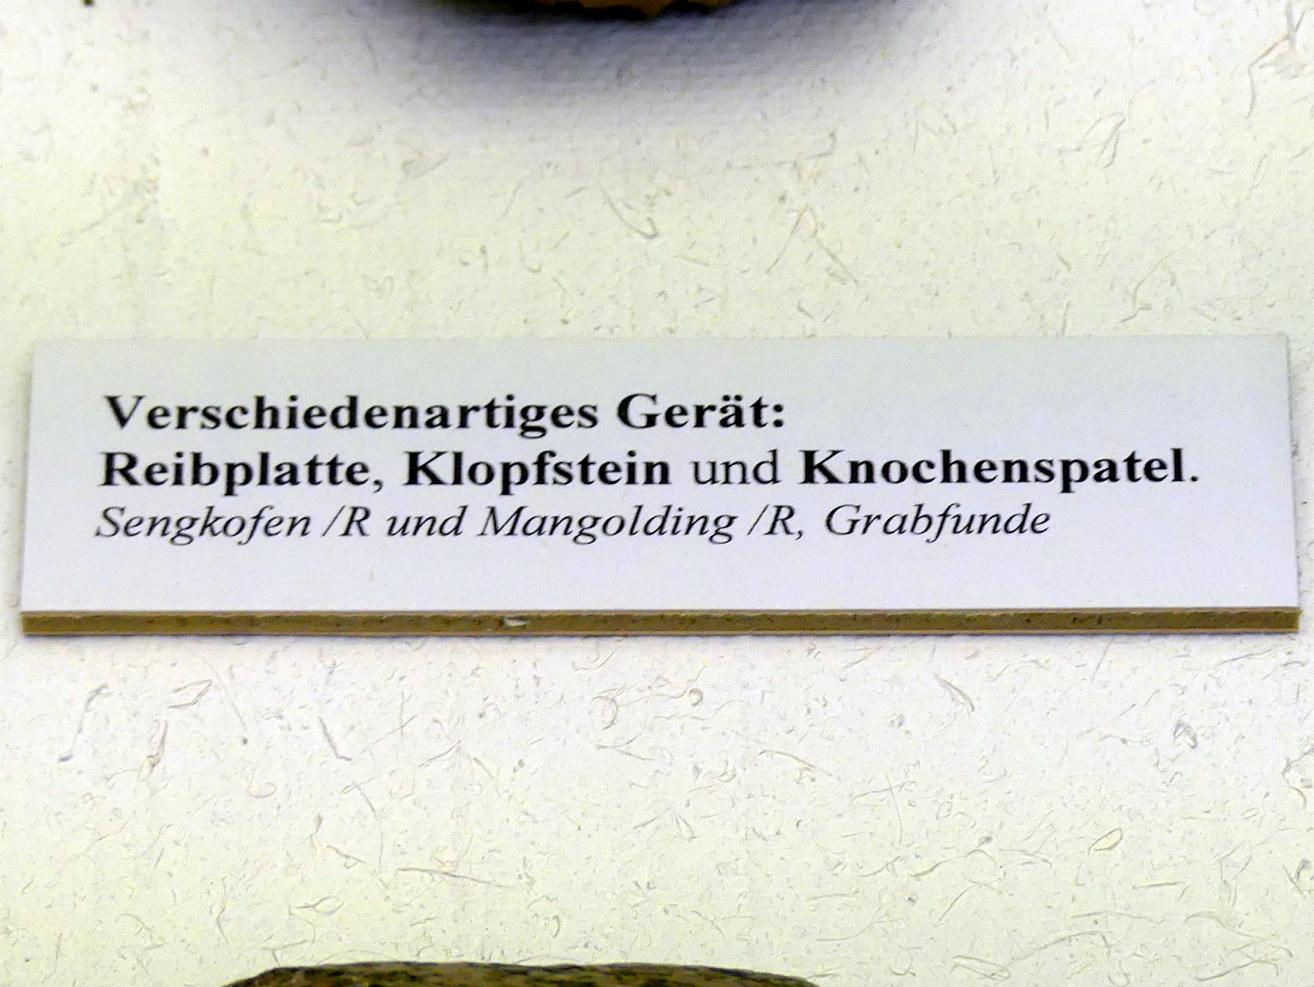 Knochenspatel, Frühneolithikum (Altneolithikum), 5500 - 4900 v. Chr., Bild 2/2